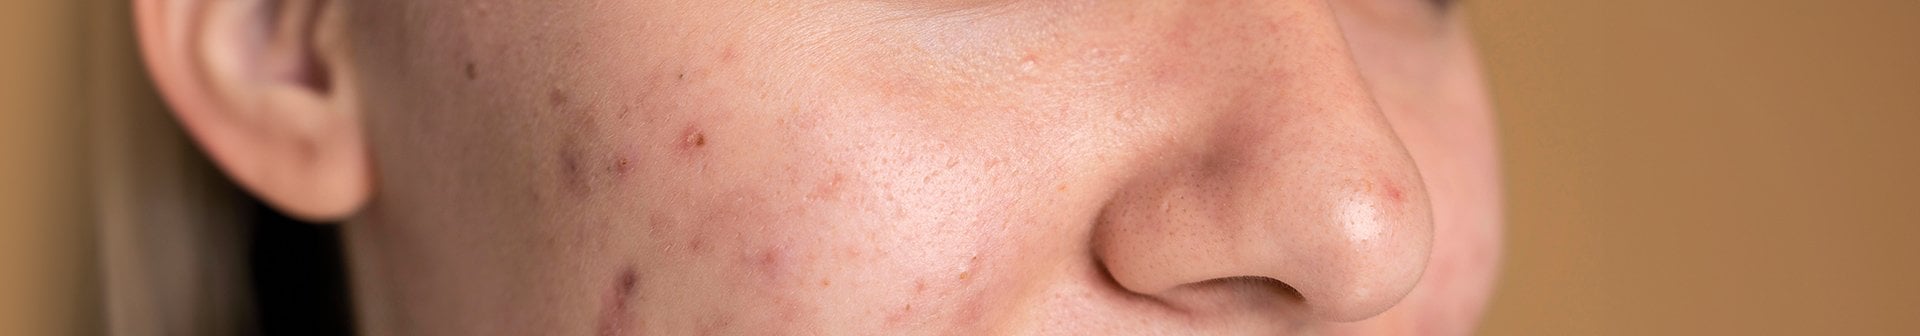 Gesichtsausschnitt einer jungen Frau mit Hautunreinheiten auf der rechten Wange